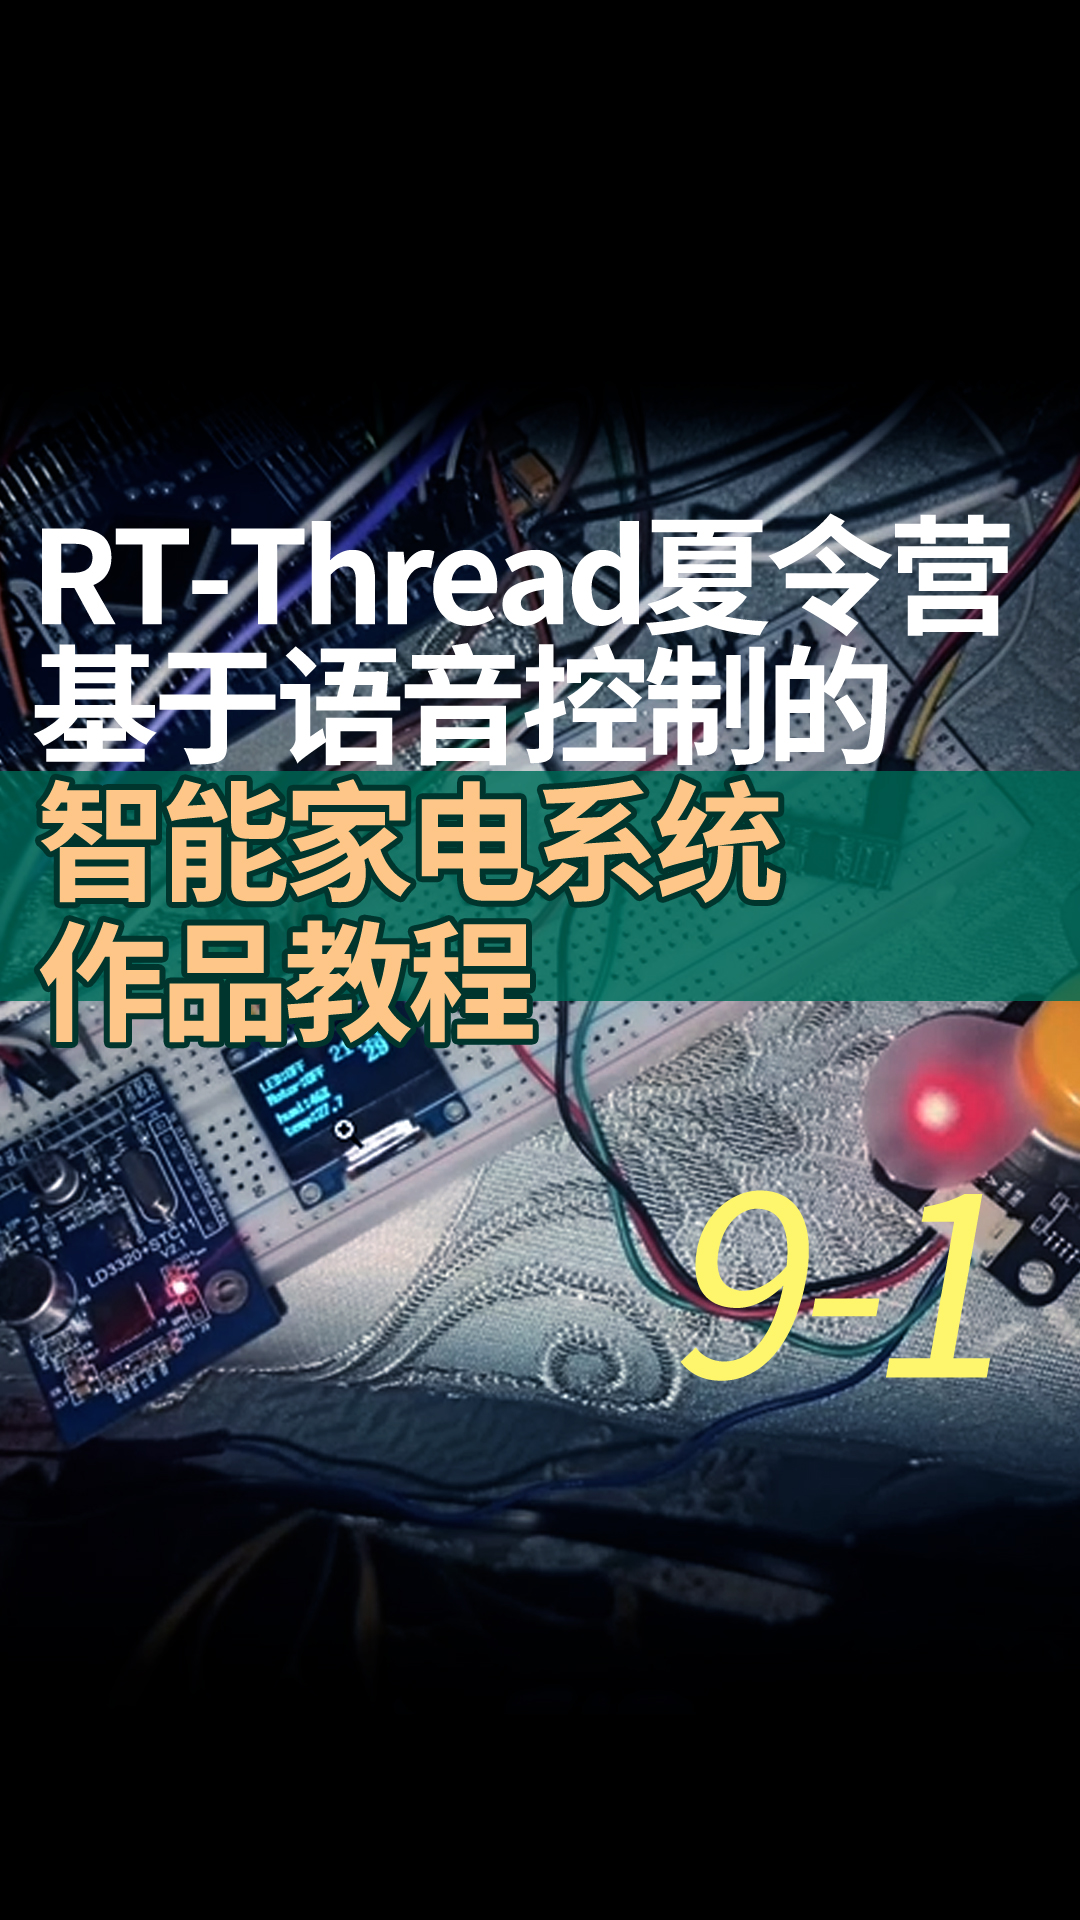 RT-Thread夏令營基于語音控制的智能家電系統作品教程9-1U8g2軟件包的使用